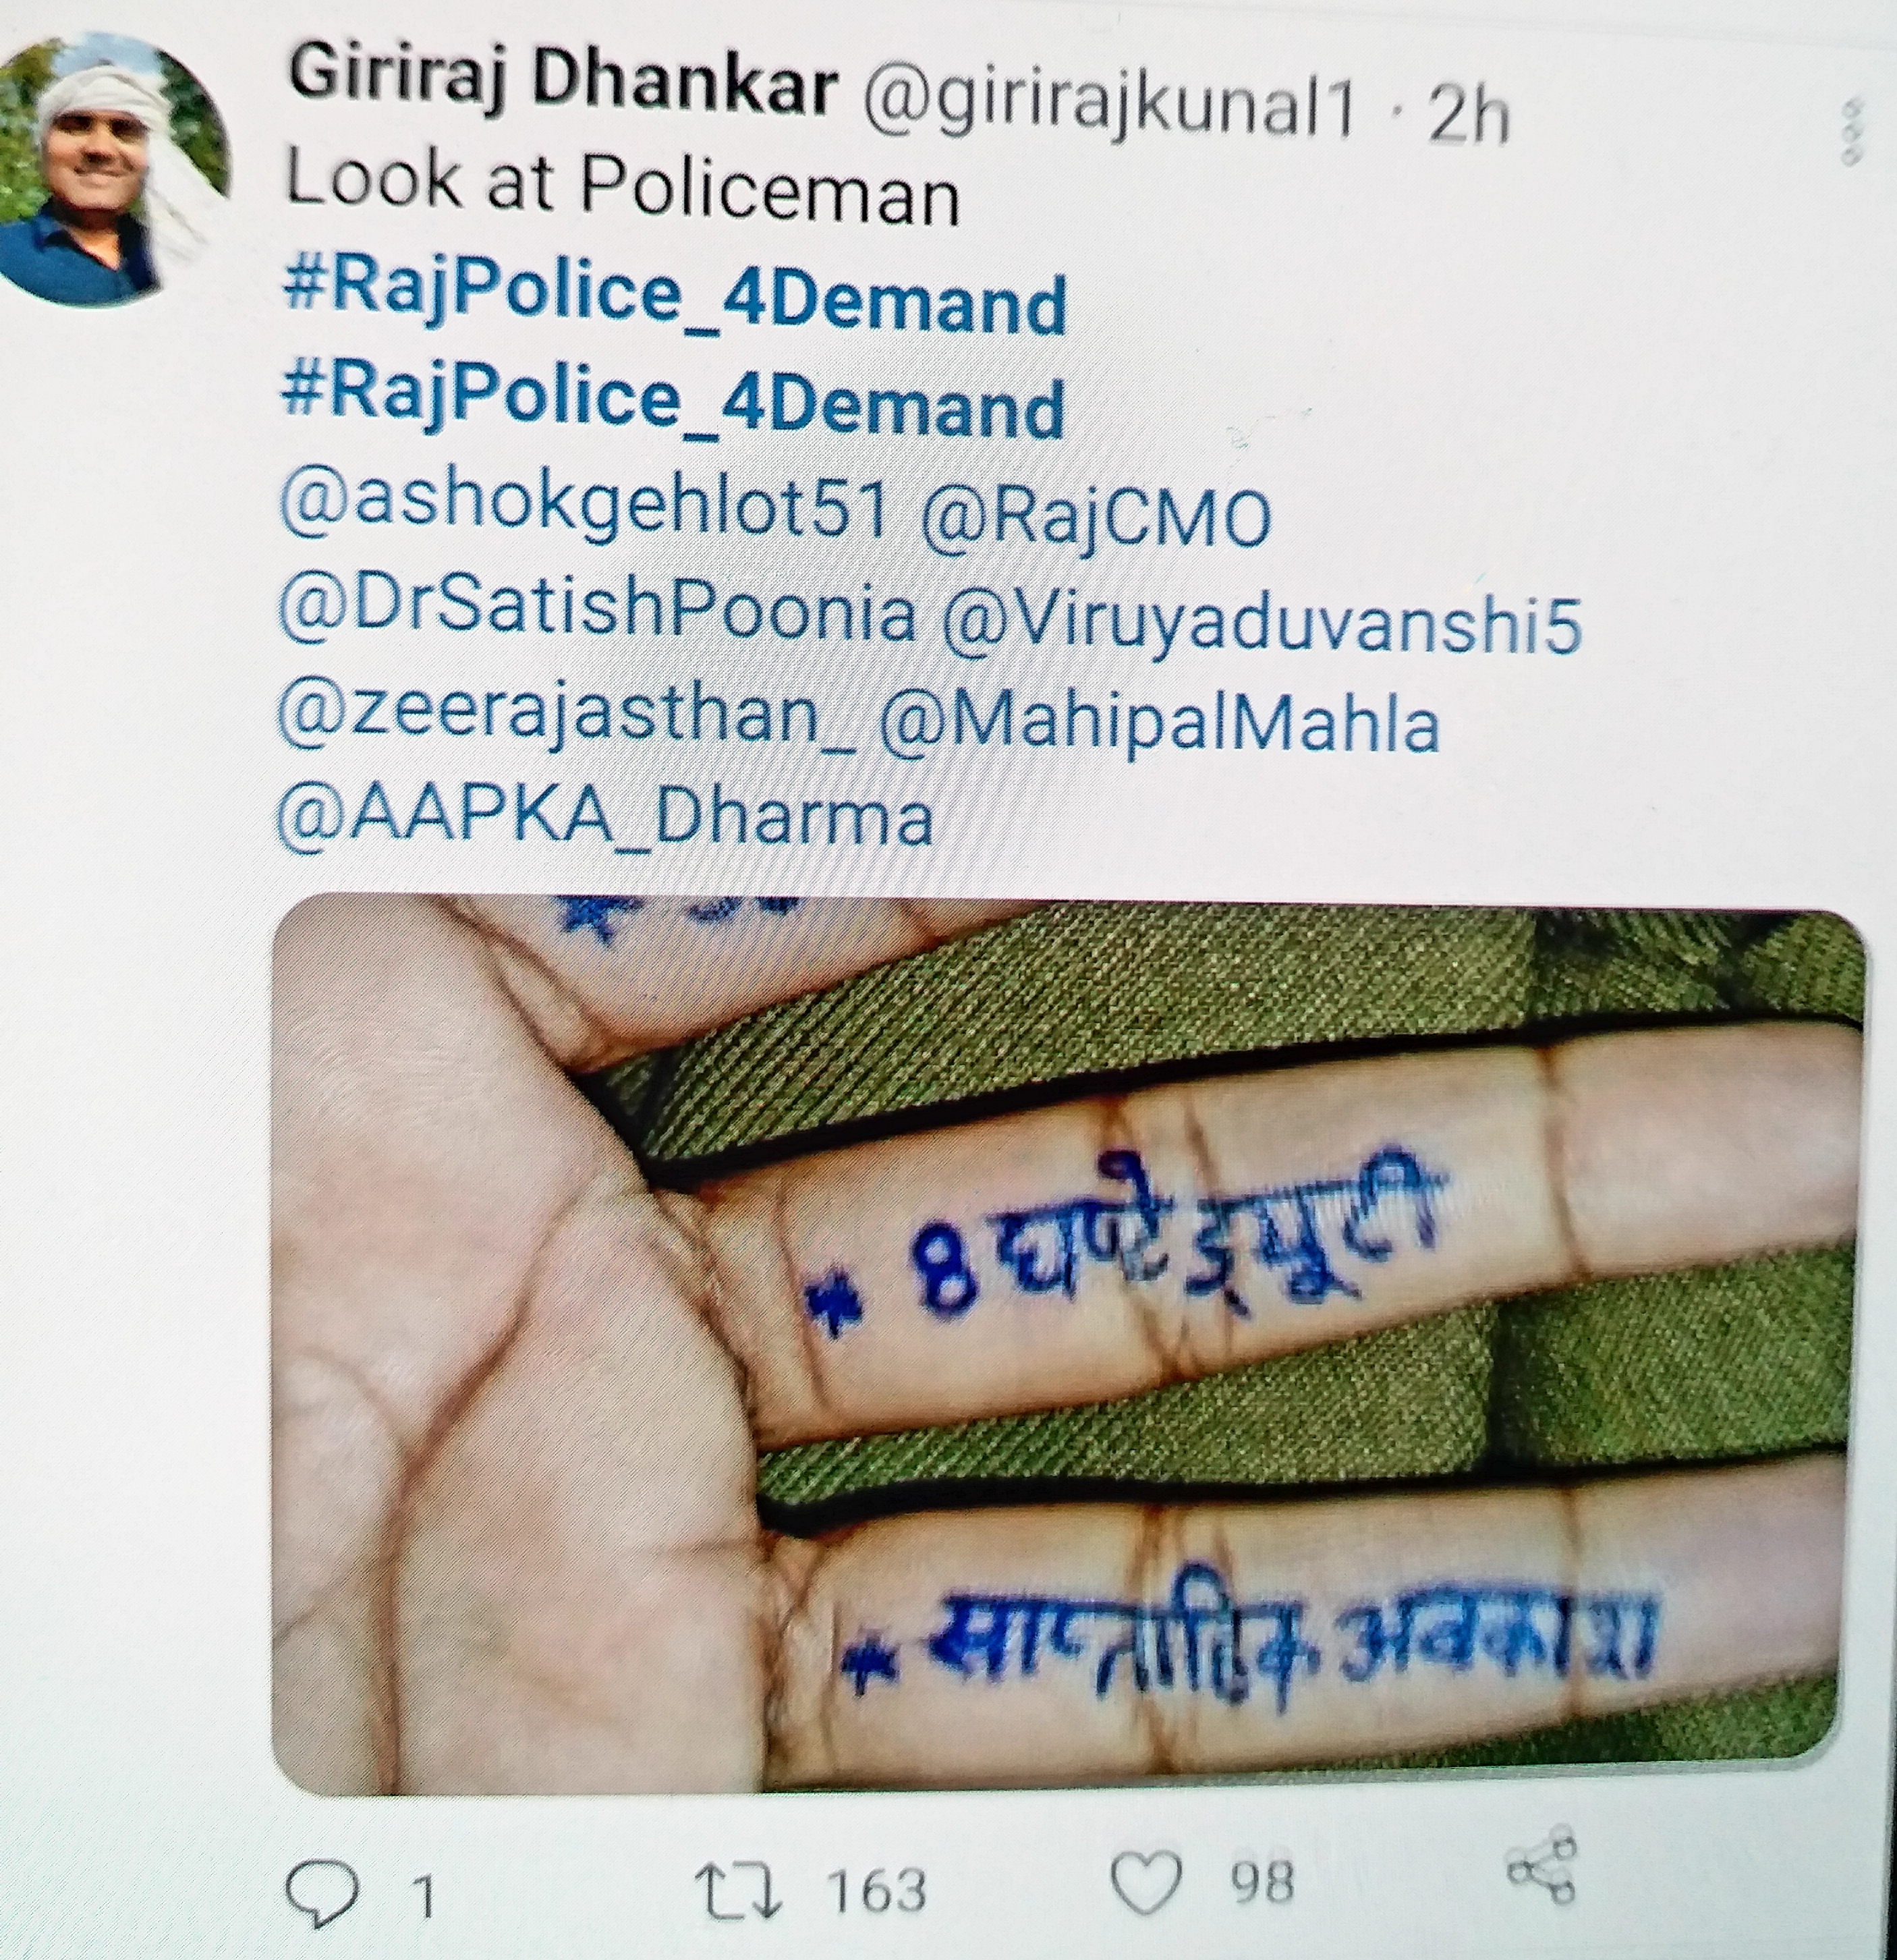 Rajasthan Police Constable Hashtag Campaign, राजस्थान पुलिस कांस्टेबल हैशटैग अभियान